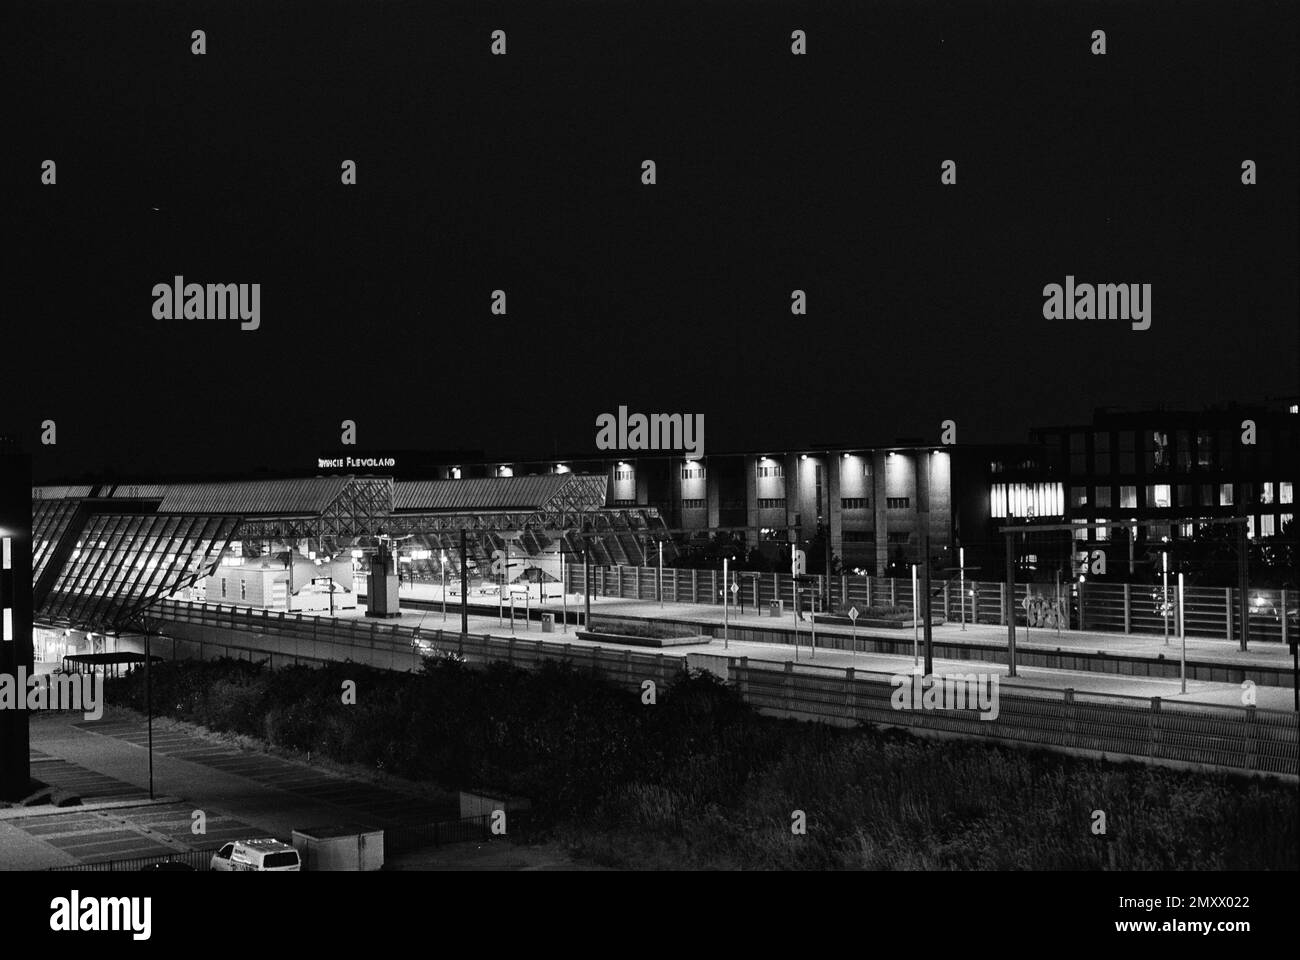 Bahnhof Lelystad Centrum Nederlandse Spoorwegen, NS, Dutch Railways, at Night, Lelystad, Niederlande Stockfoto